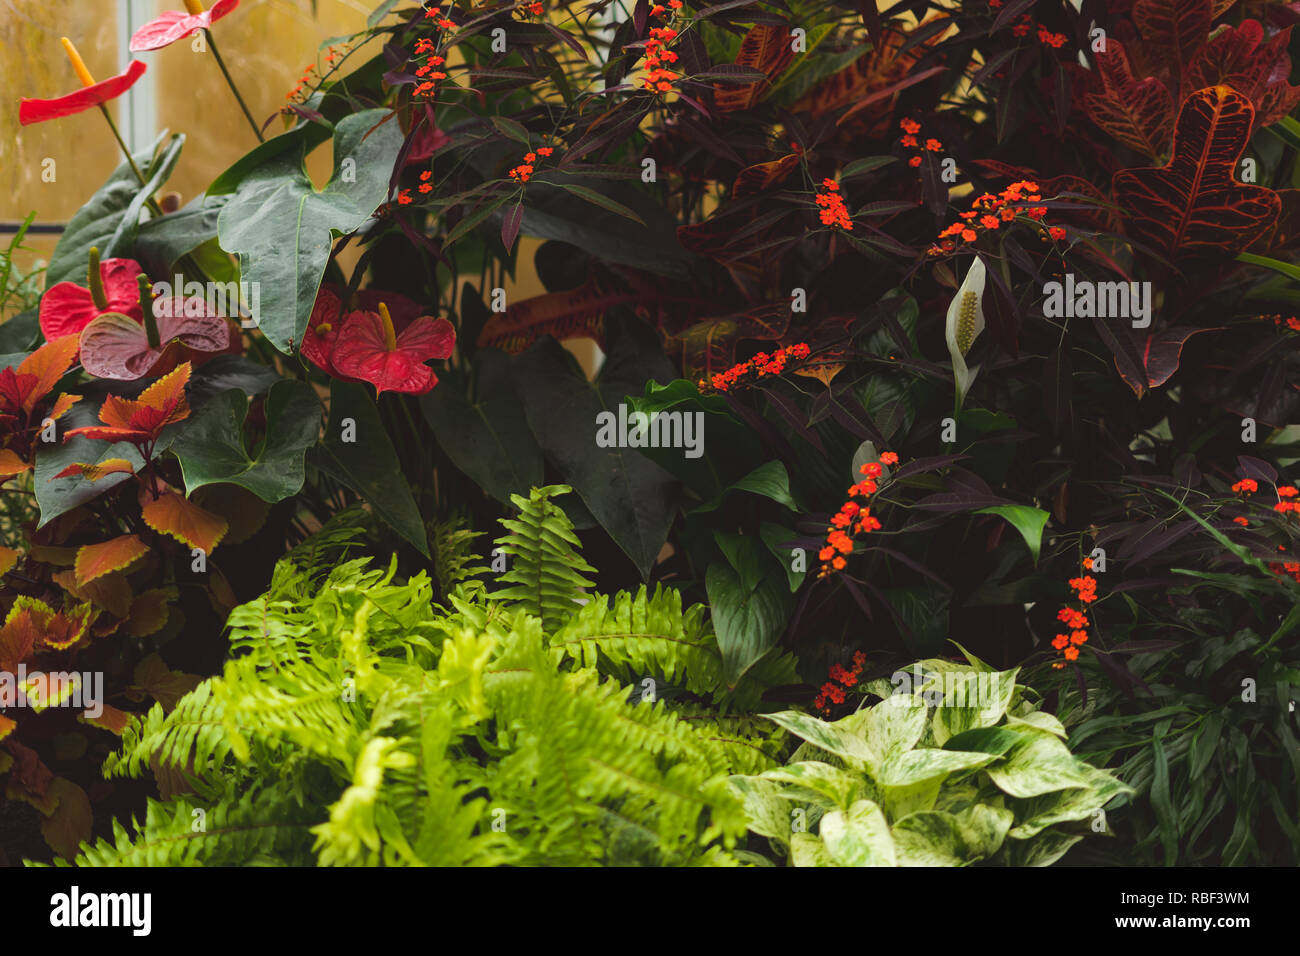 Jardin avec des fleurs succulentes, cactus, feuilles colorées, à l'intérieur d'émissions Banque D'Images